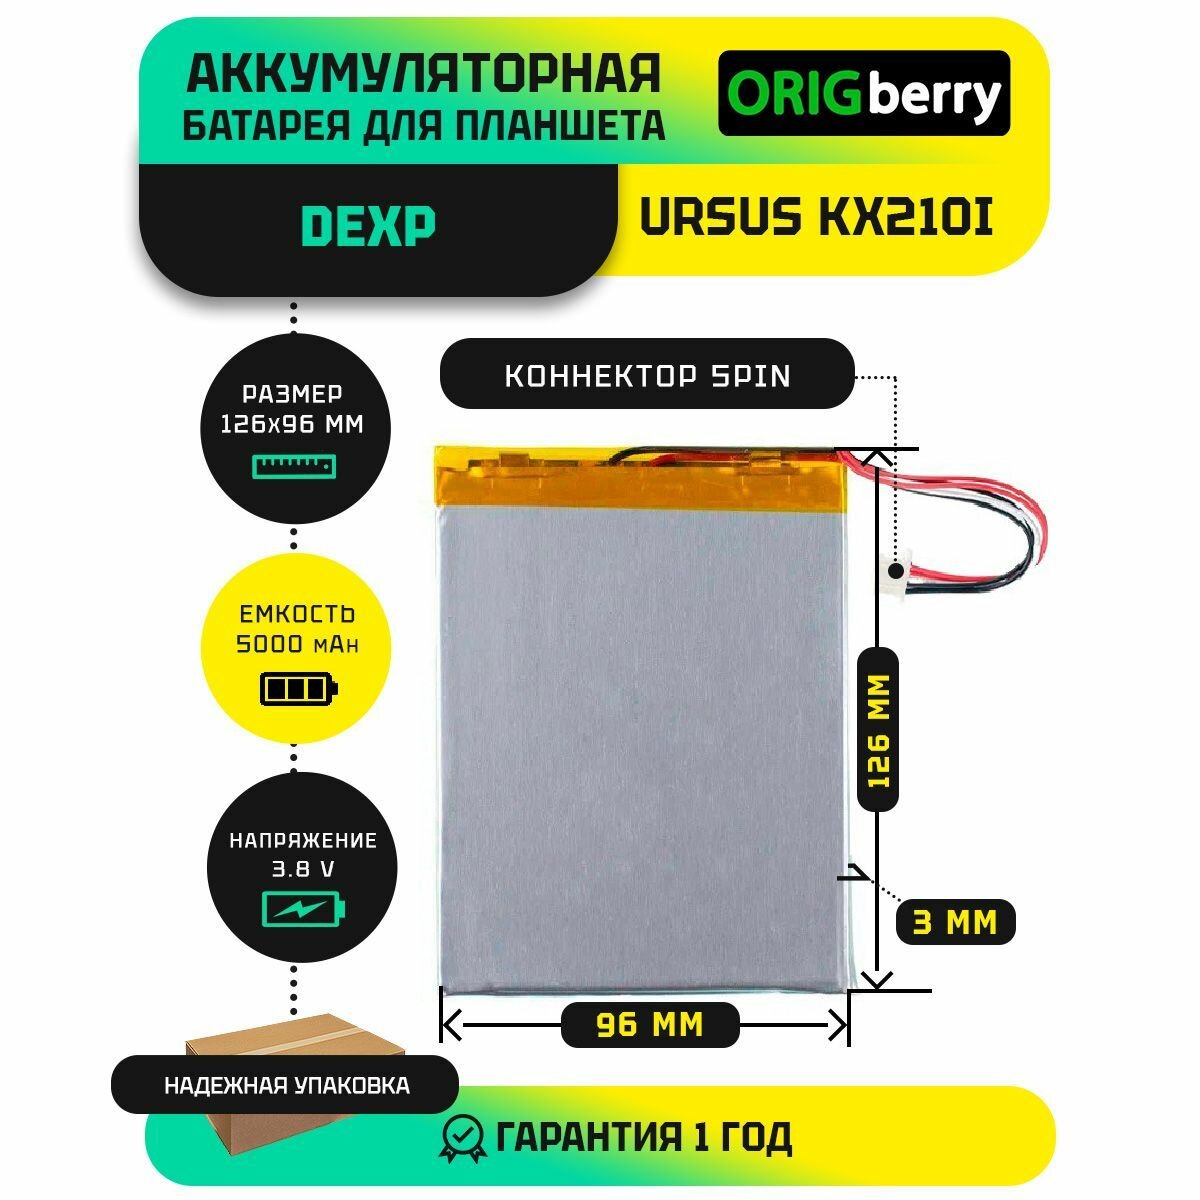 Аккумулятор для планшета Dexp Ursus KX210i WiFi 3,8 V / 5000 mAh / 126мм x 96мм x 3мм / коннектор 5 PIN